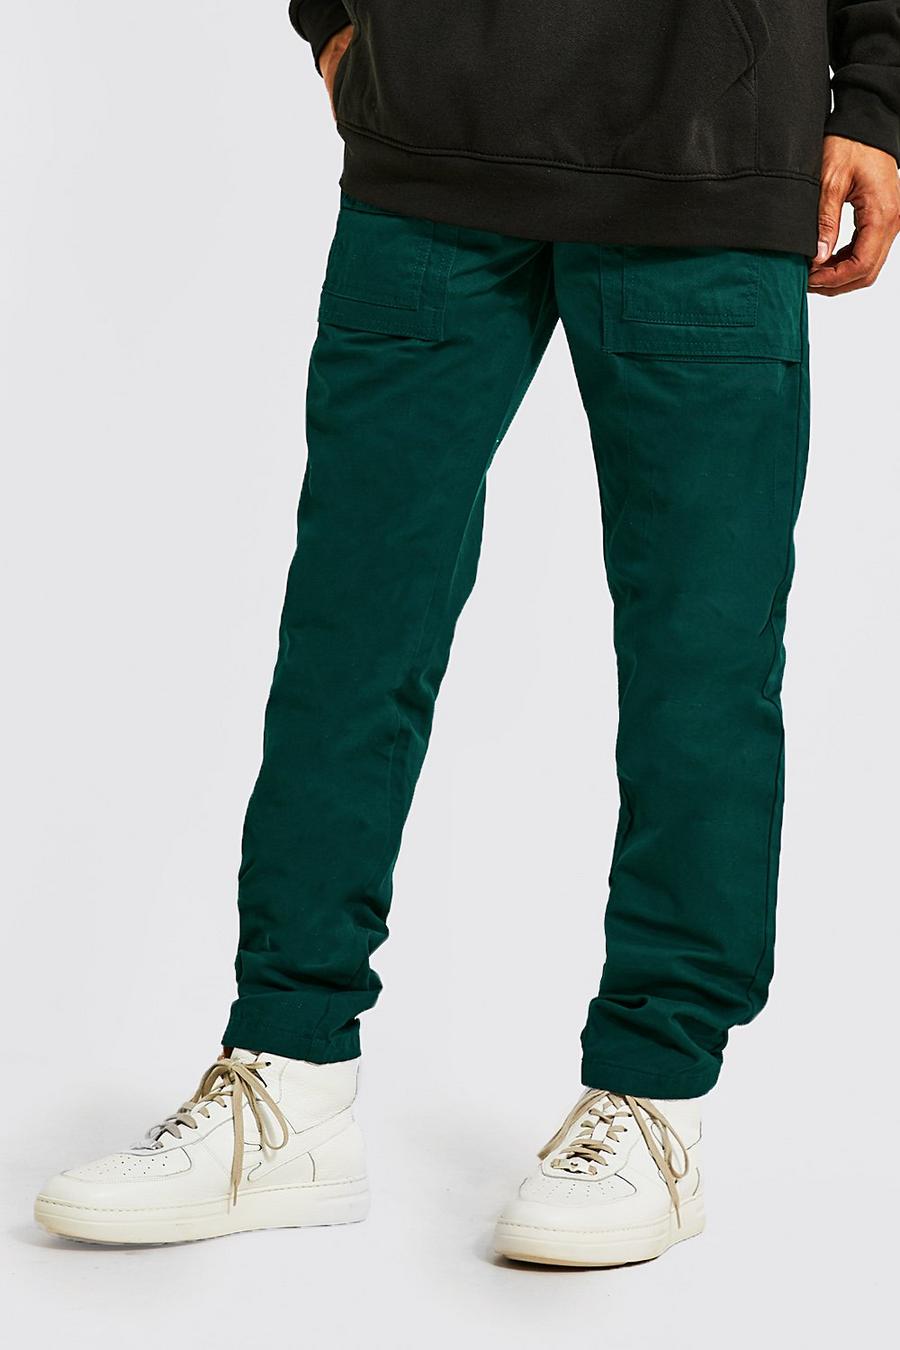 Pantaloni Cargo Slim Fit con tasche in rilievo su più livelli, Green gerde